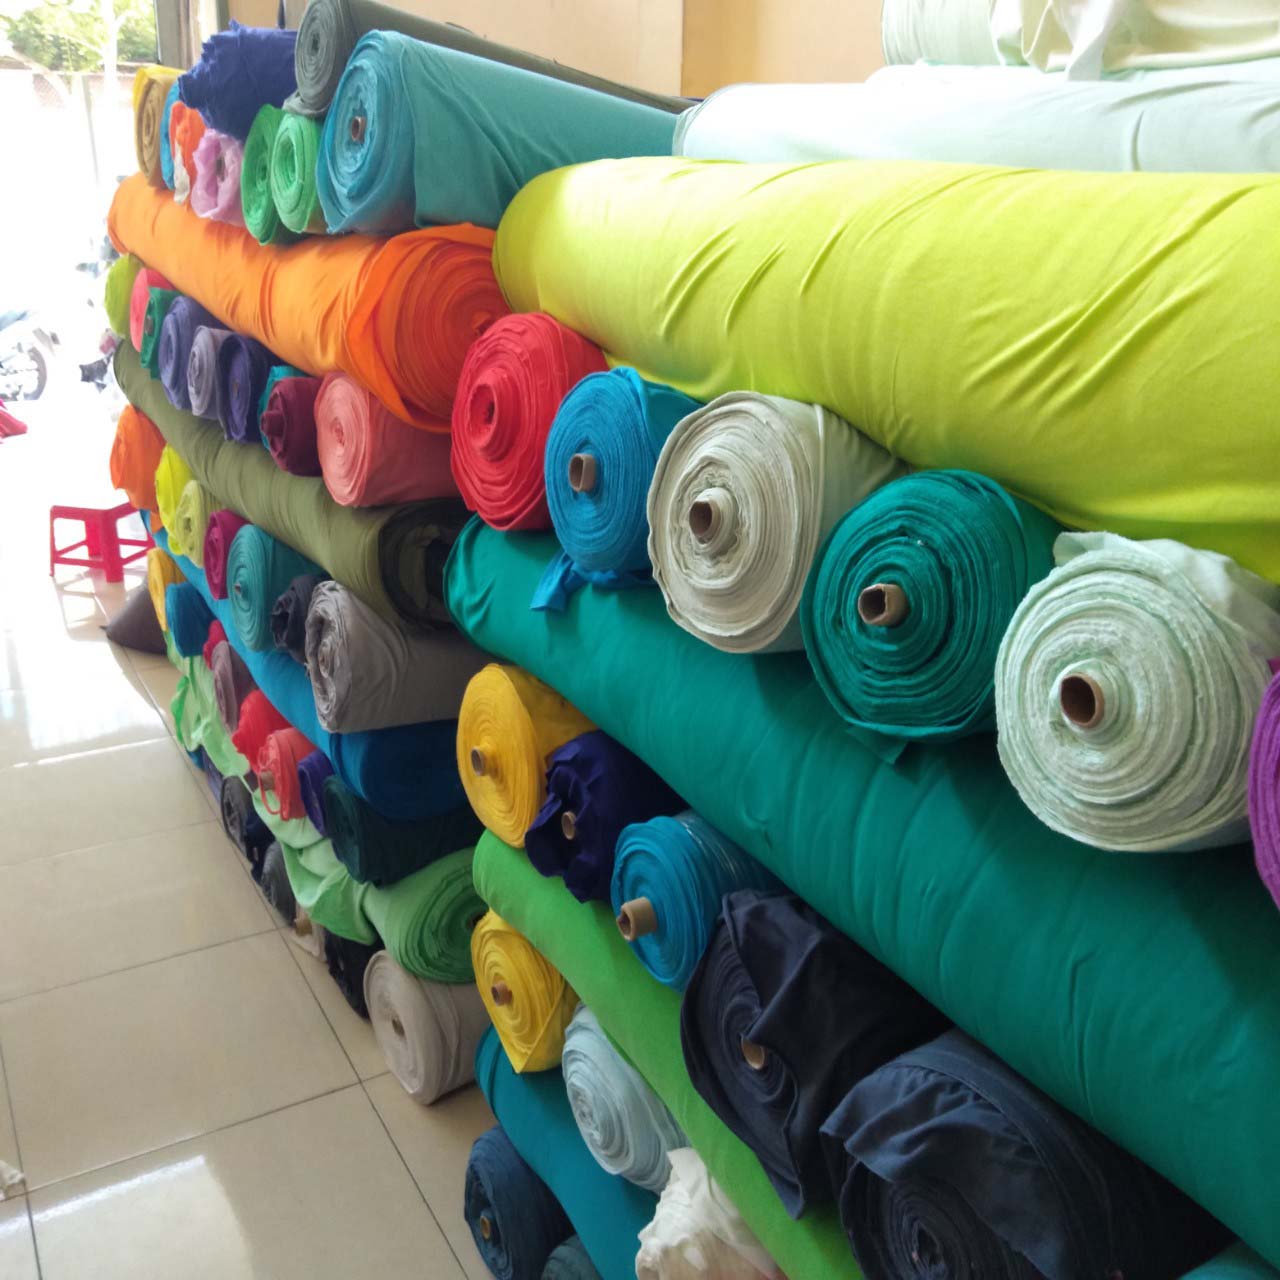 Thu mua vải vụn thanh lý tại Hà Nội【✔️Cao hơn thị trường 33%】